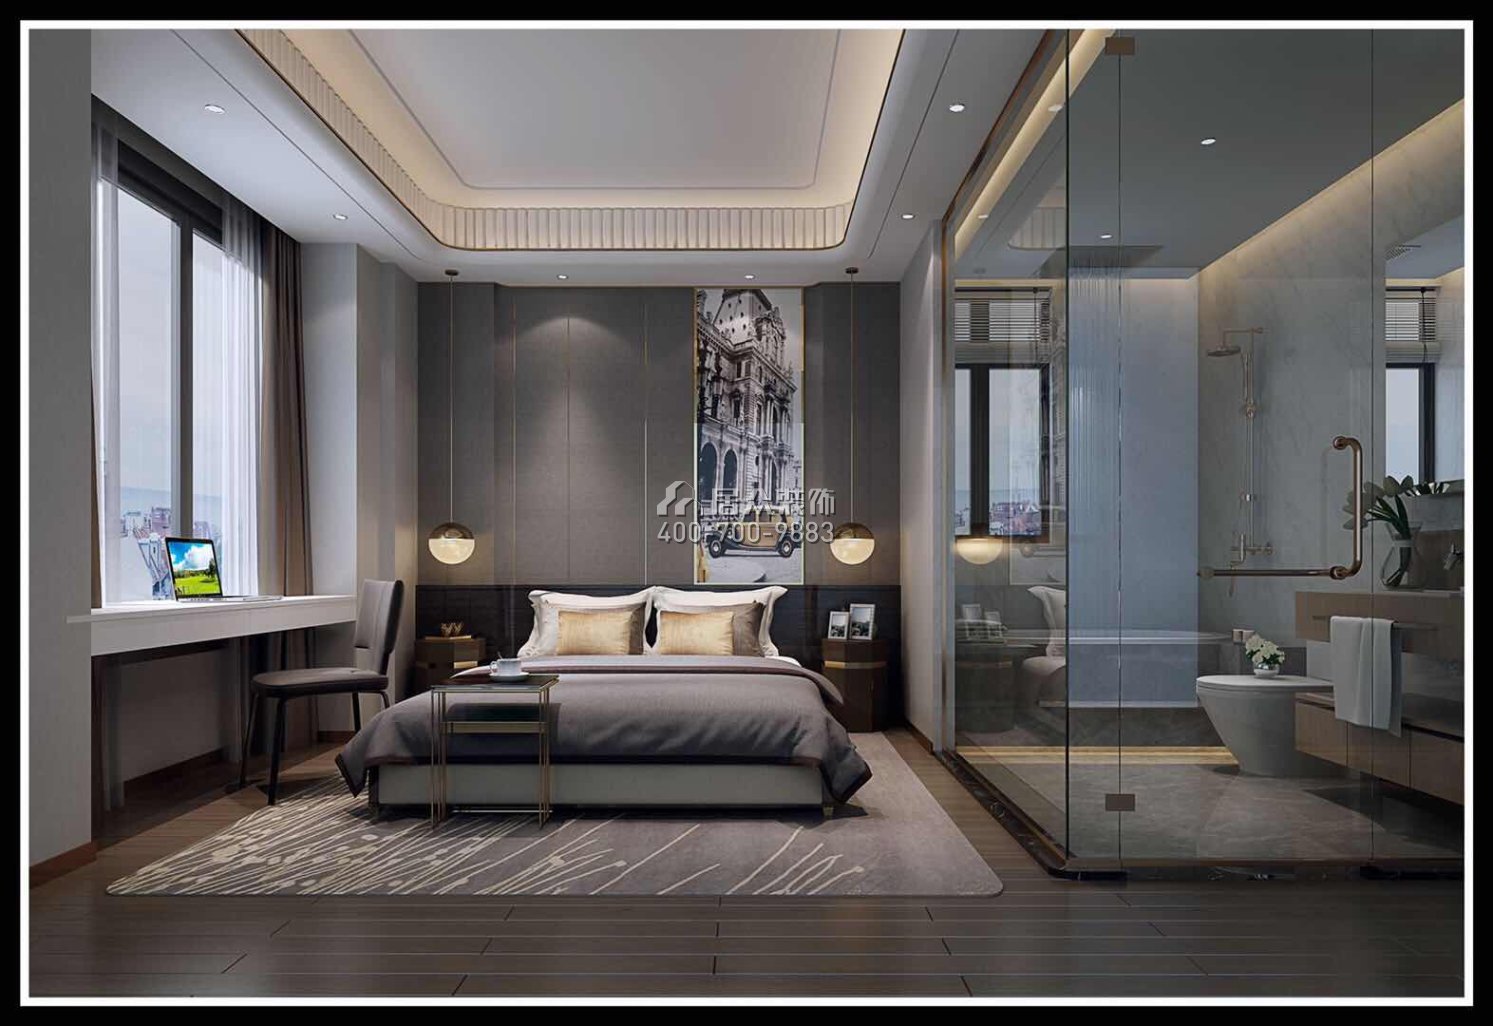 海逸豪庭御峰267平方米现代简约风格别墅户型卧室装修效果图